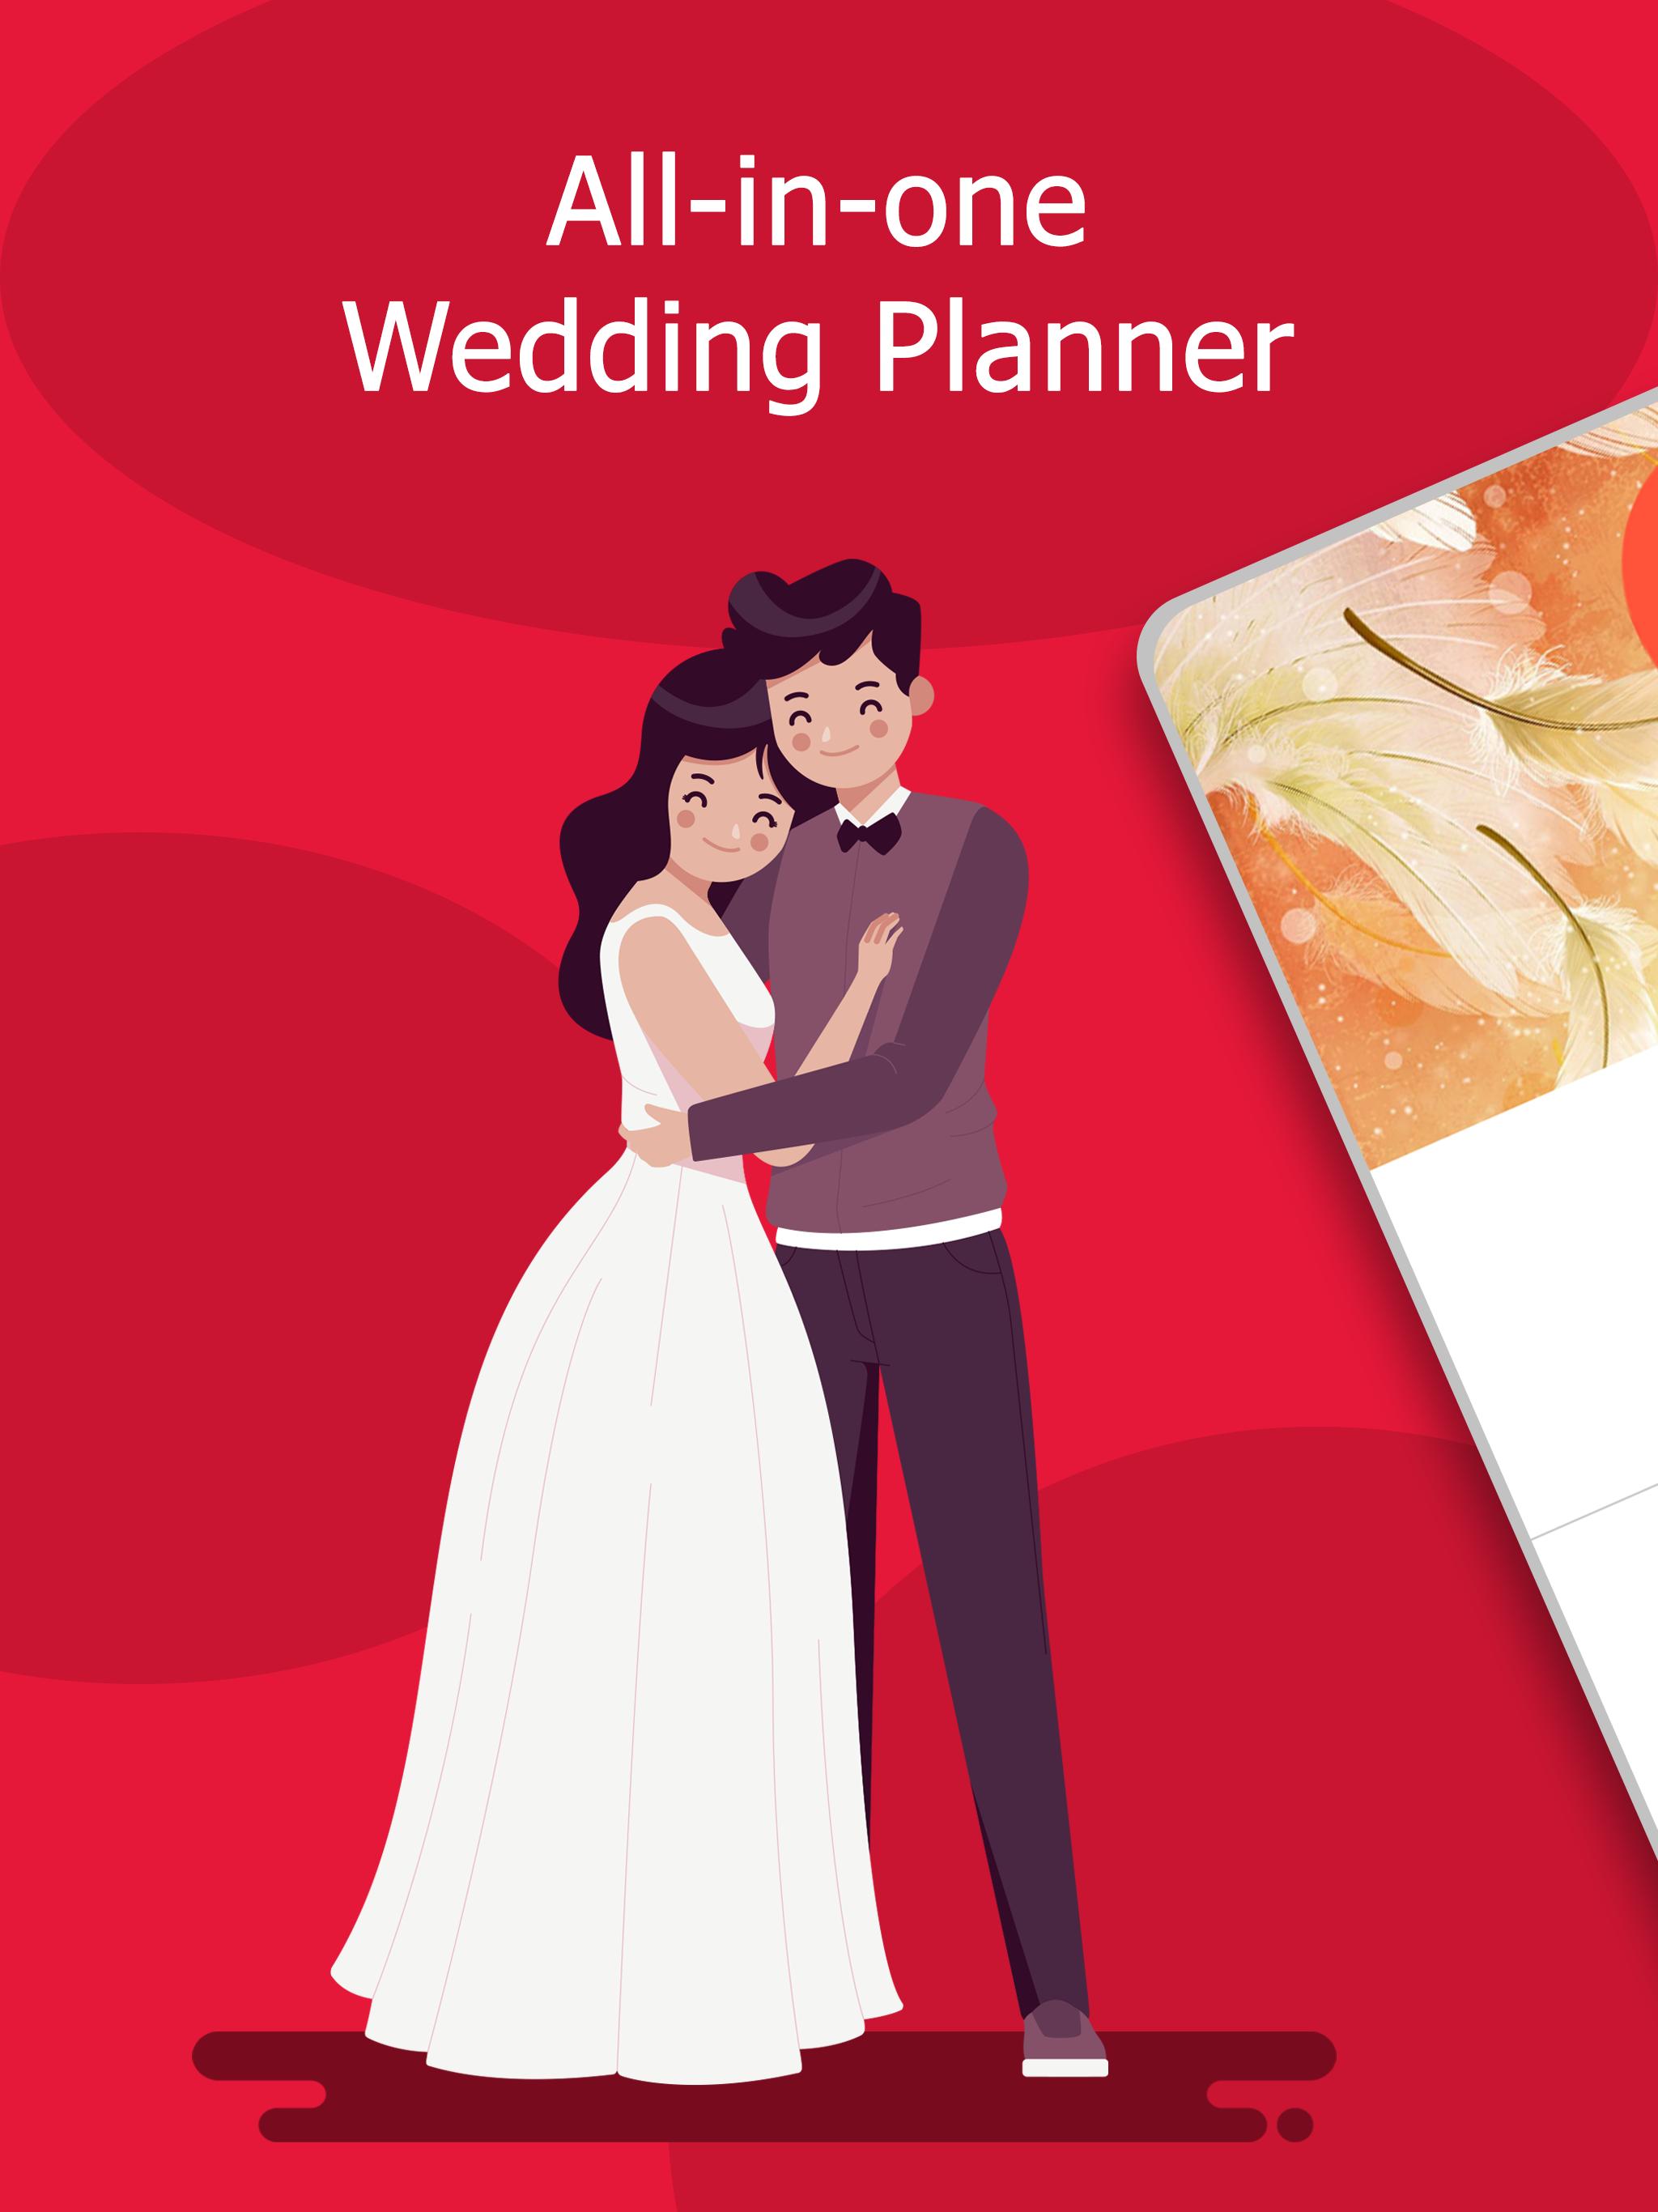 Wedding Planner: Checklist, Budget, Countdown 2.04.227 Screenshot 15